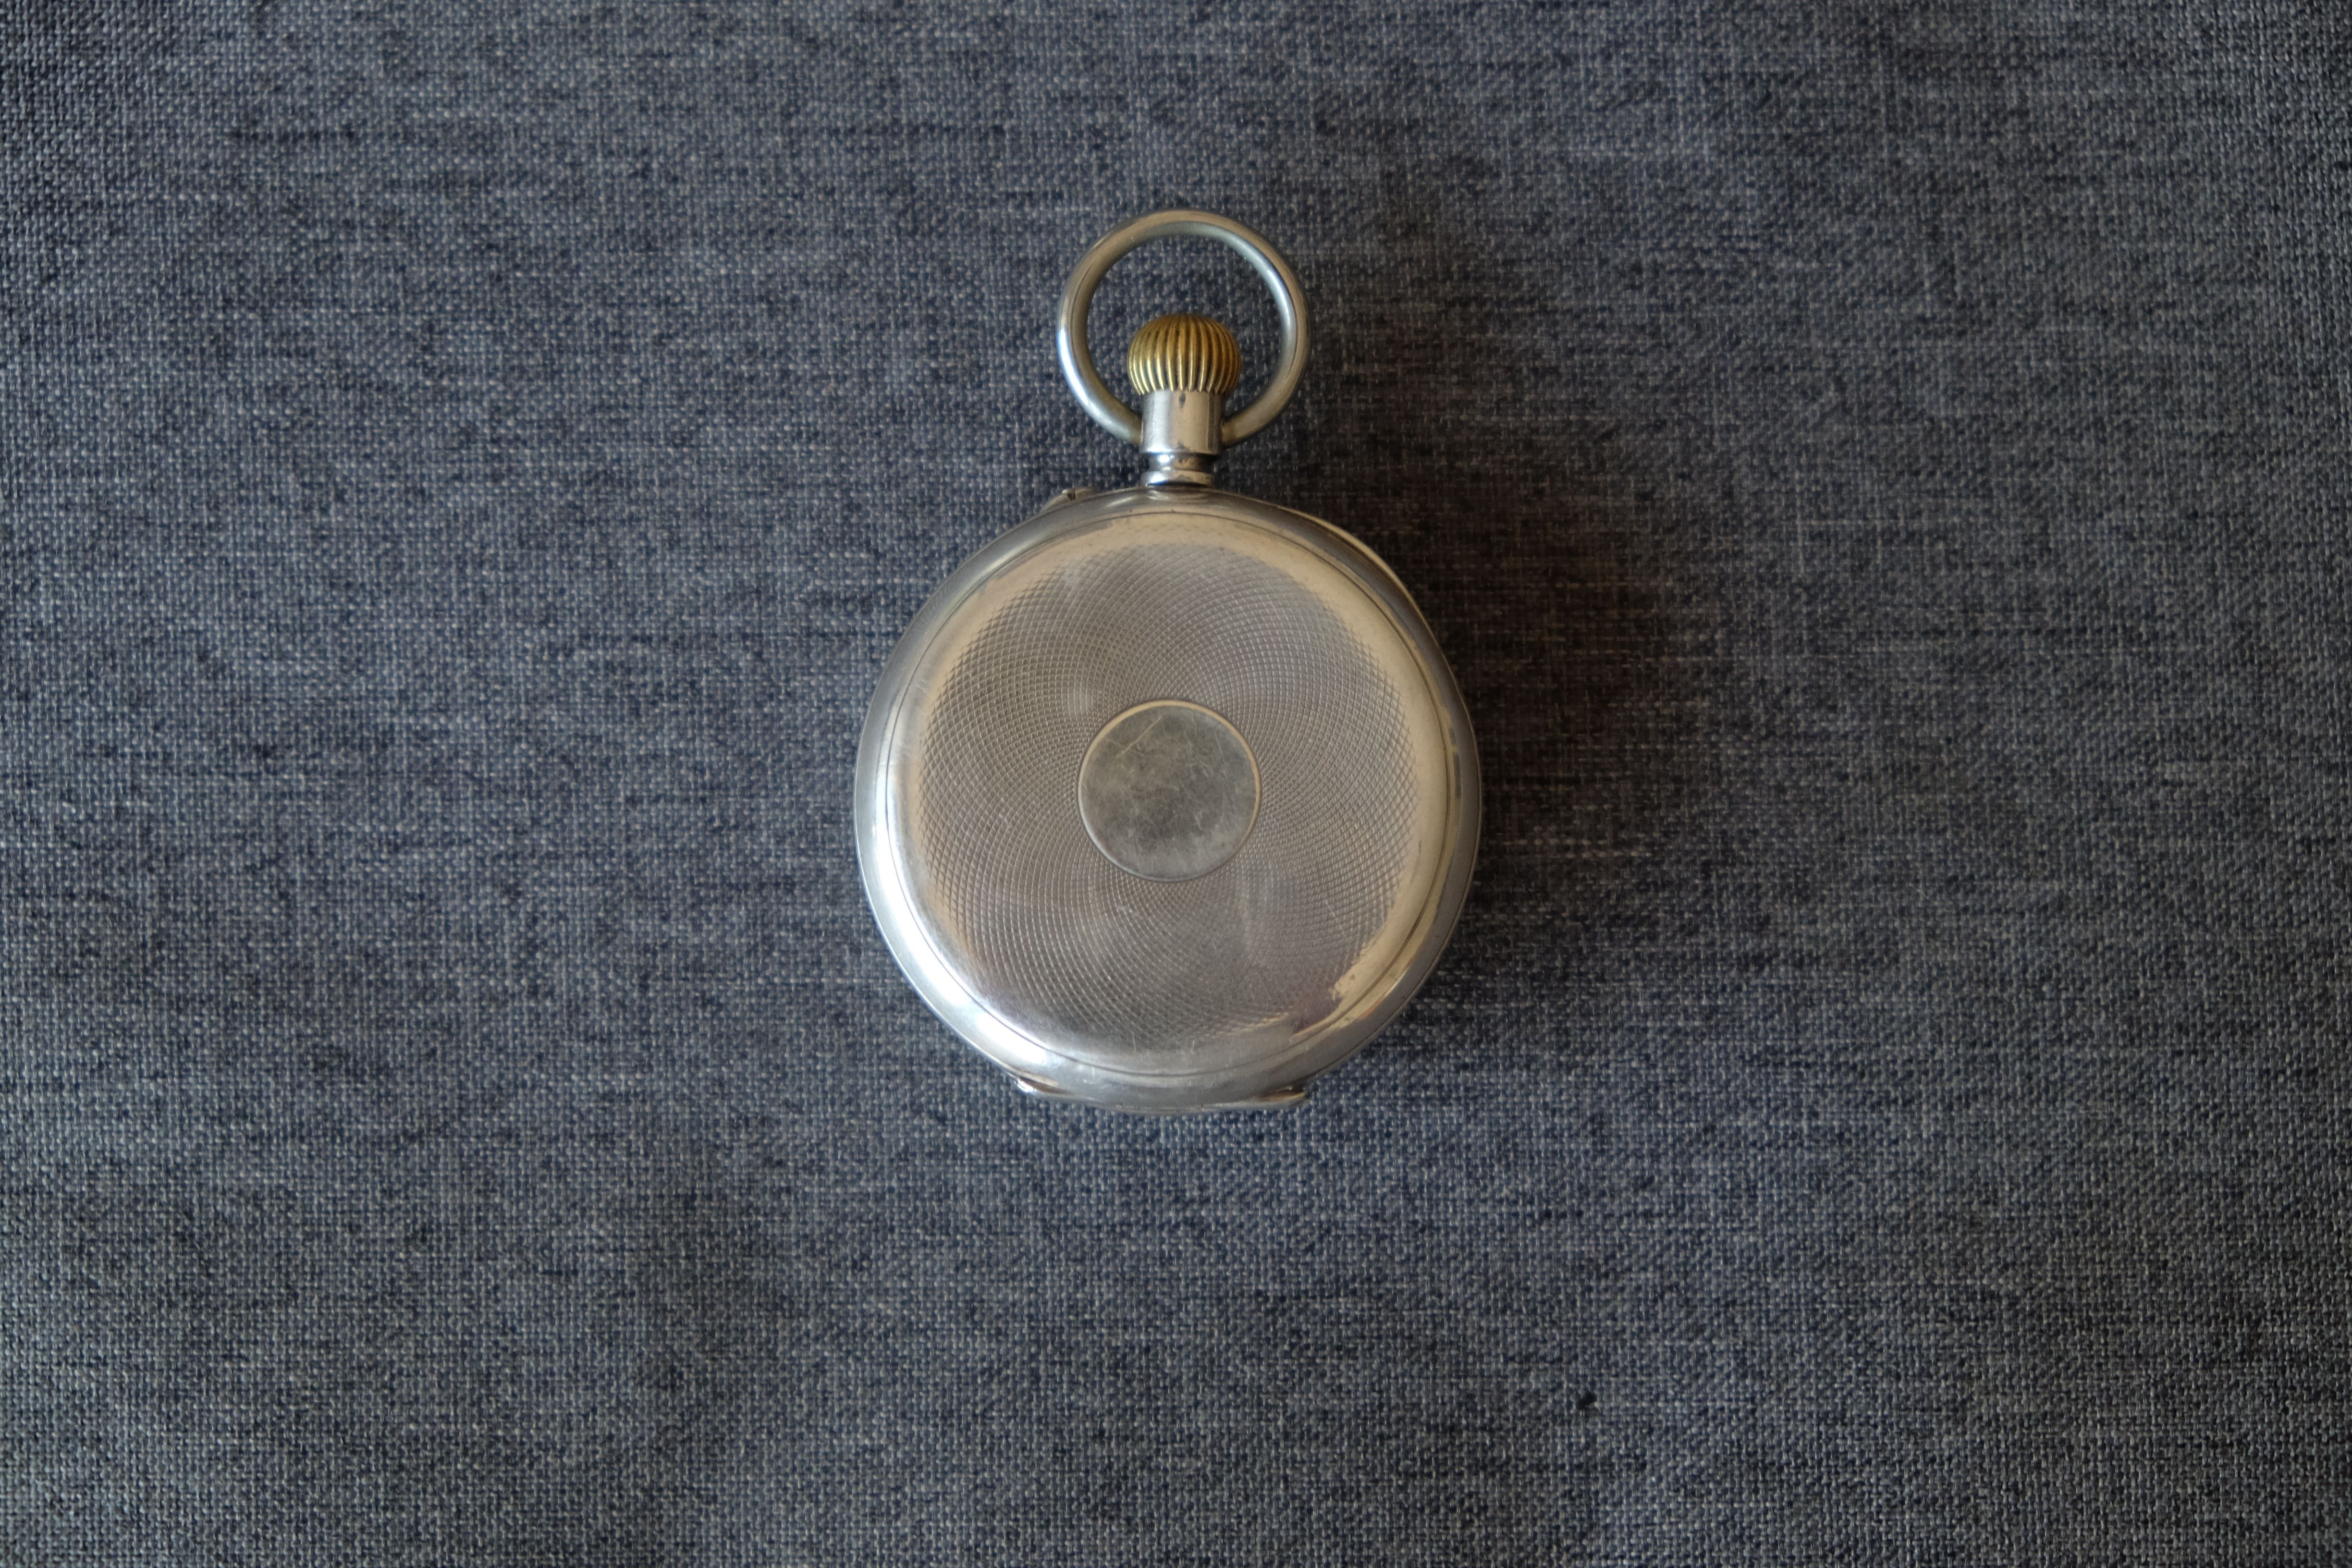 Relógio de Bolso Vintage de Prata, Asher Levy, em bom estado